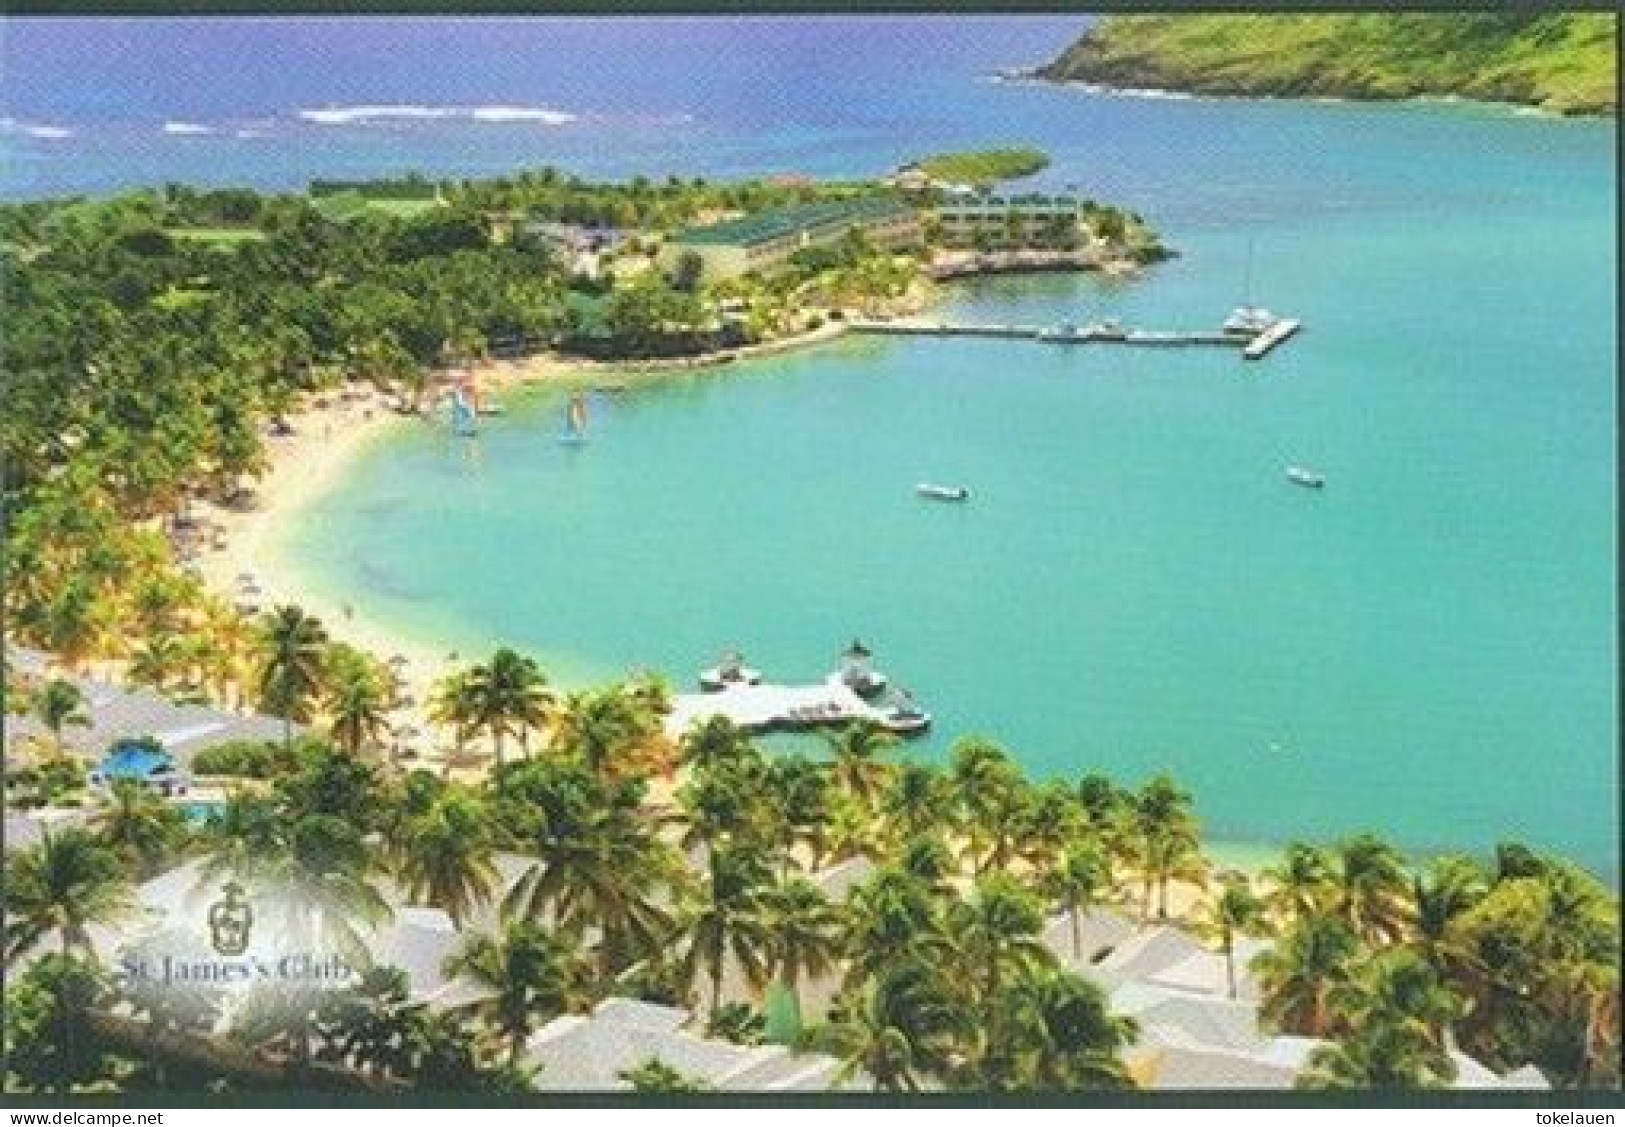 Antigua Island West Indies Caribbean Sea Caribic Antilles - Antigua Und Barbuda